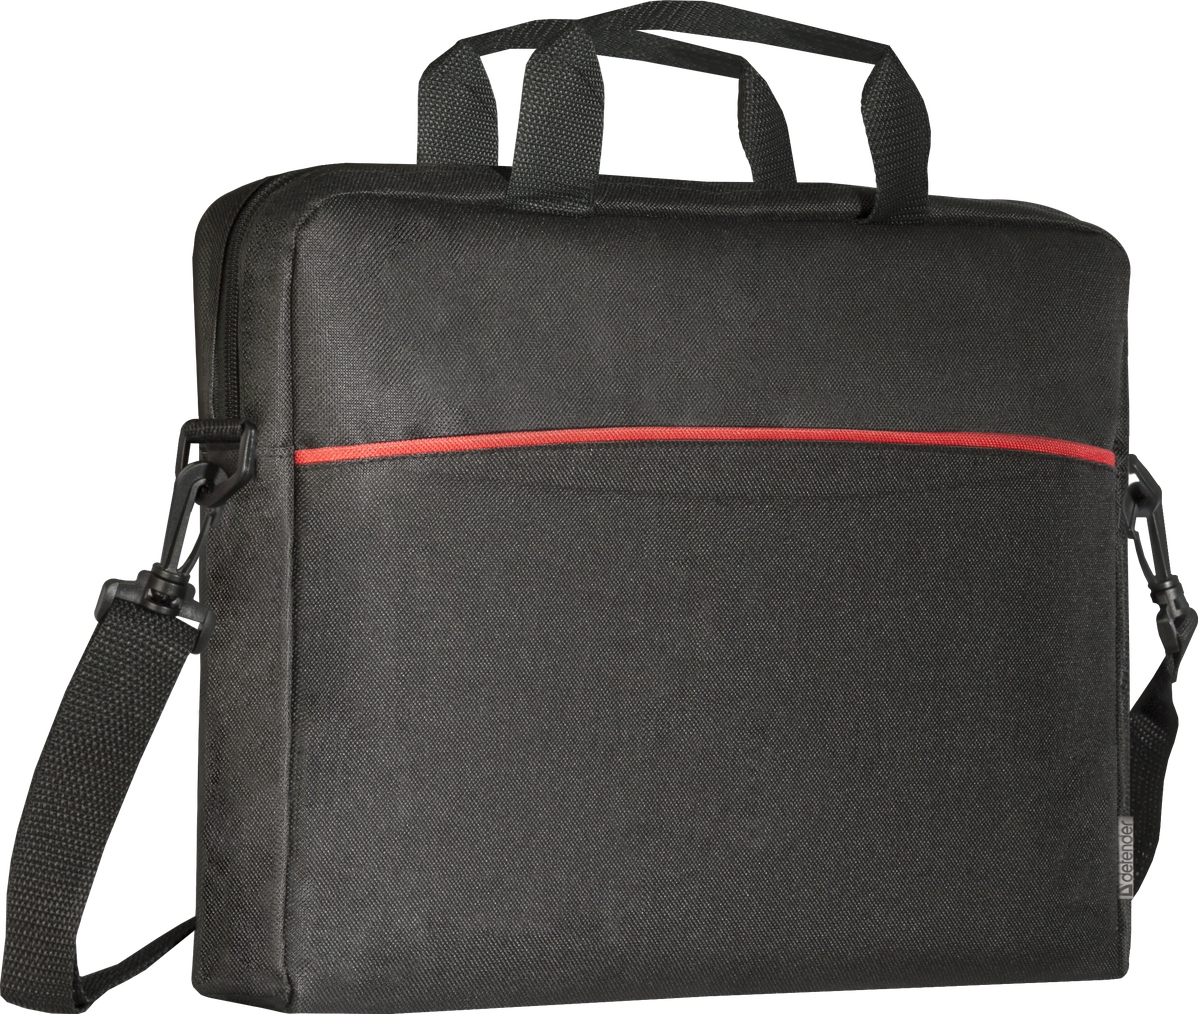 DEFENDER LITE 15.6 inch notebook laptop bag